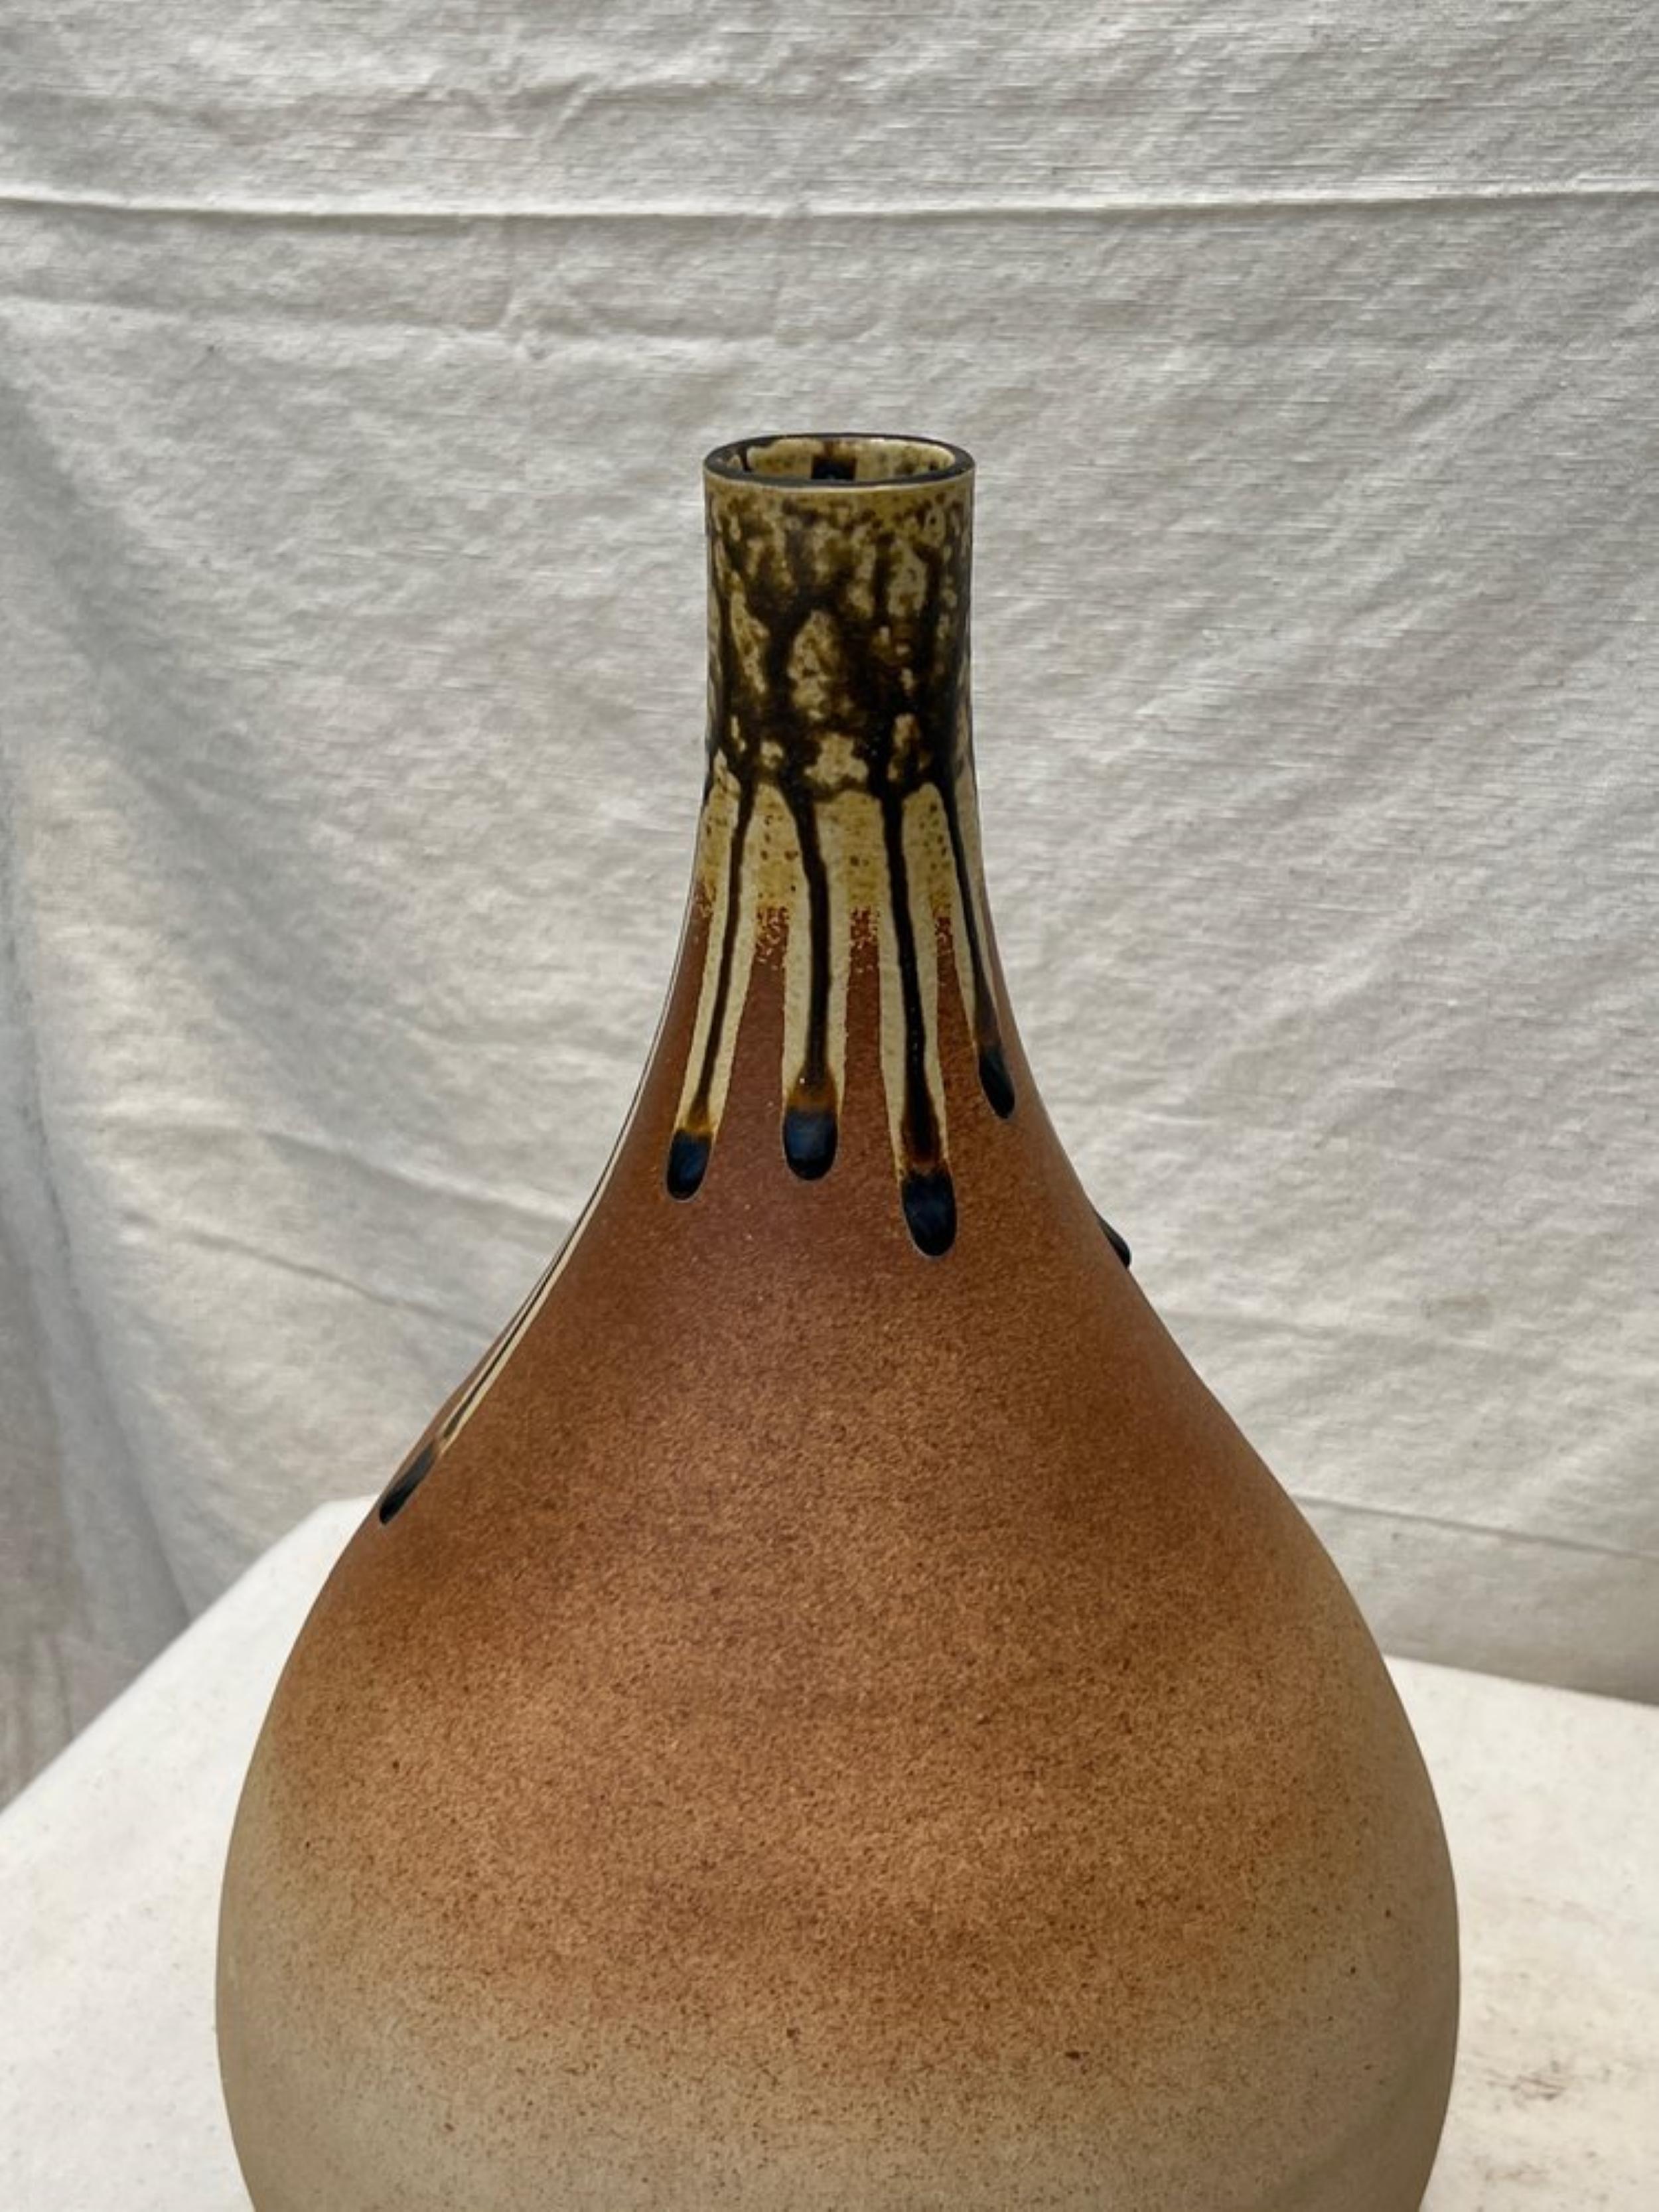 Die Mitte des 20. Jahrhunderts in Handarbeit gefertigte braune Tropfenvase aus Keramik zeichnet sich durch eine unverwechselbare Tropfglasur aus. Dieses elegante Stück verkörpert den Stil und die Raffinesse dieser Zeit.

Abmessungen: 9,5